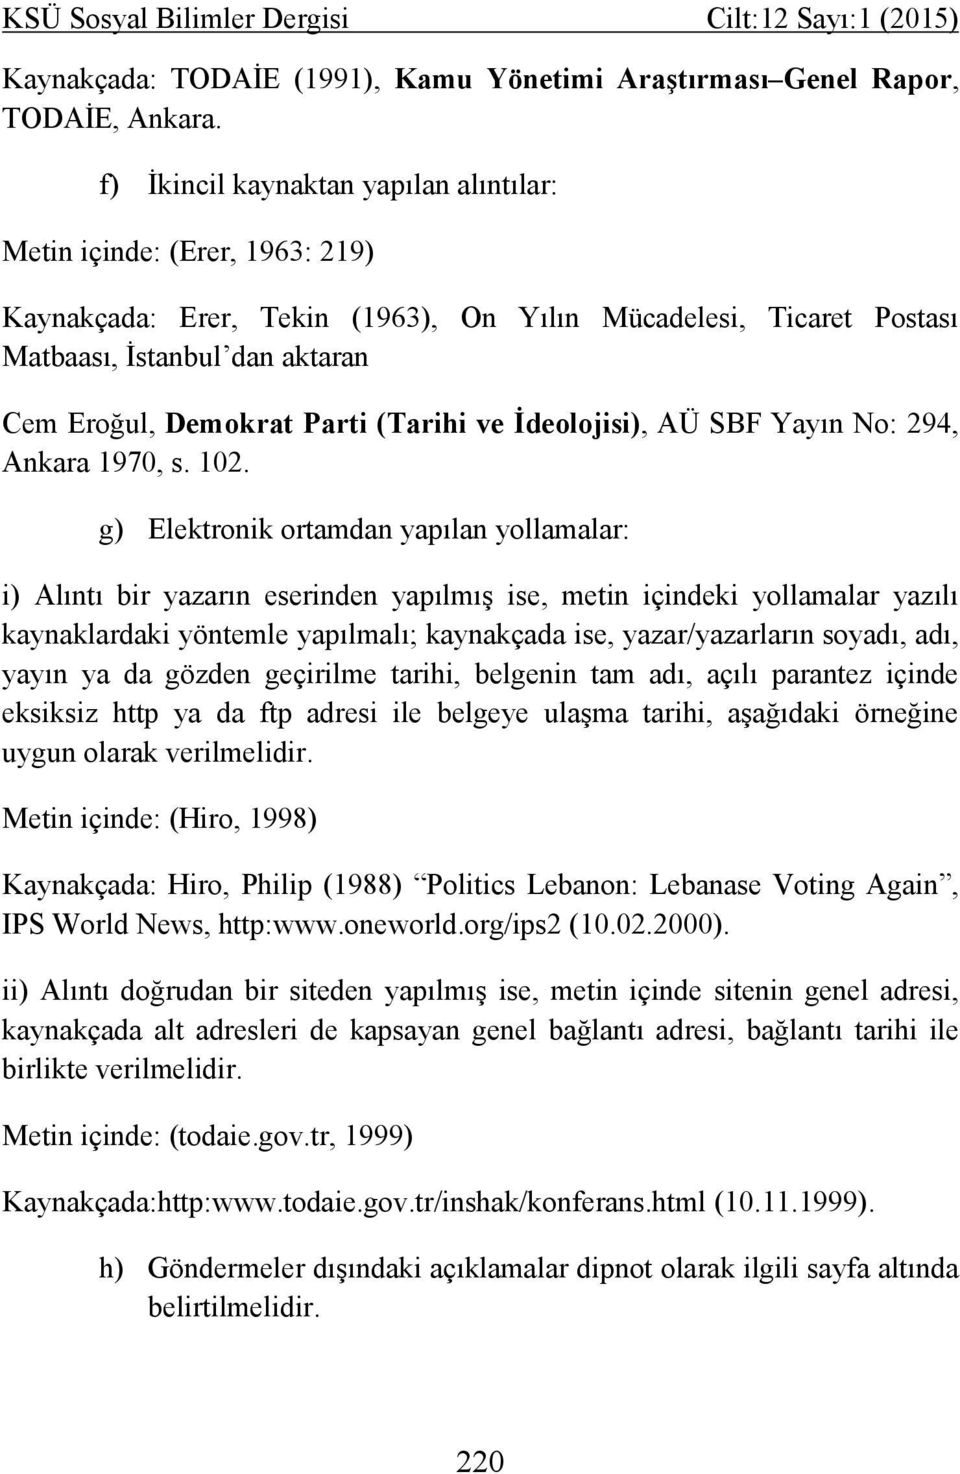 (Tarihi ve İdeolojisi), AÜ SBF Yayın No: 294, Ankara 1970, s. 102.